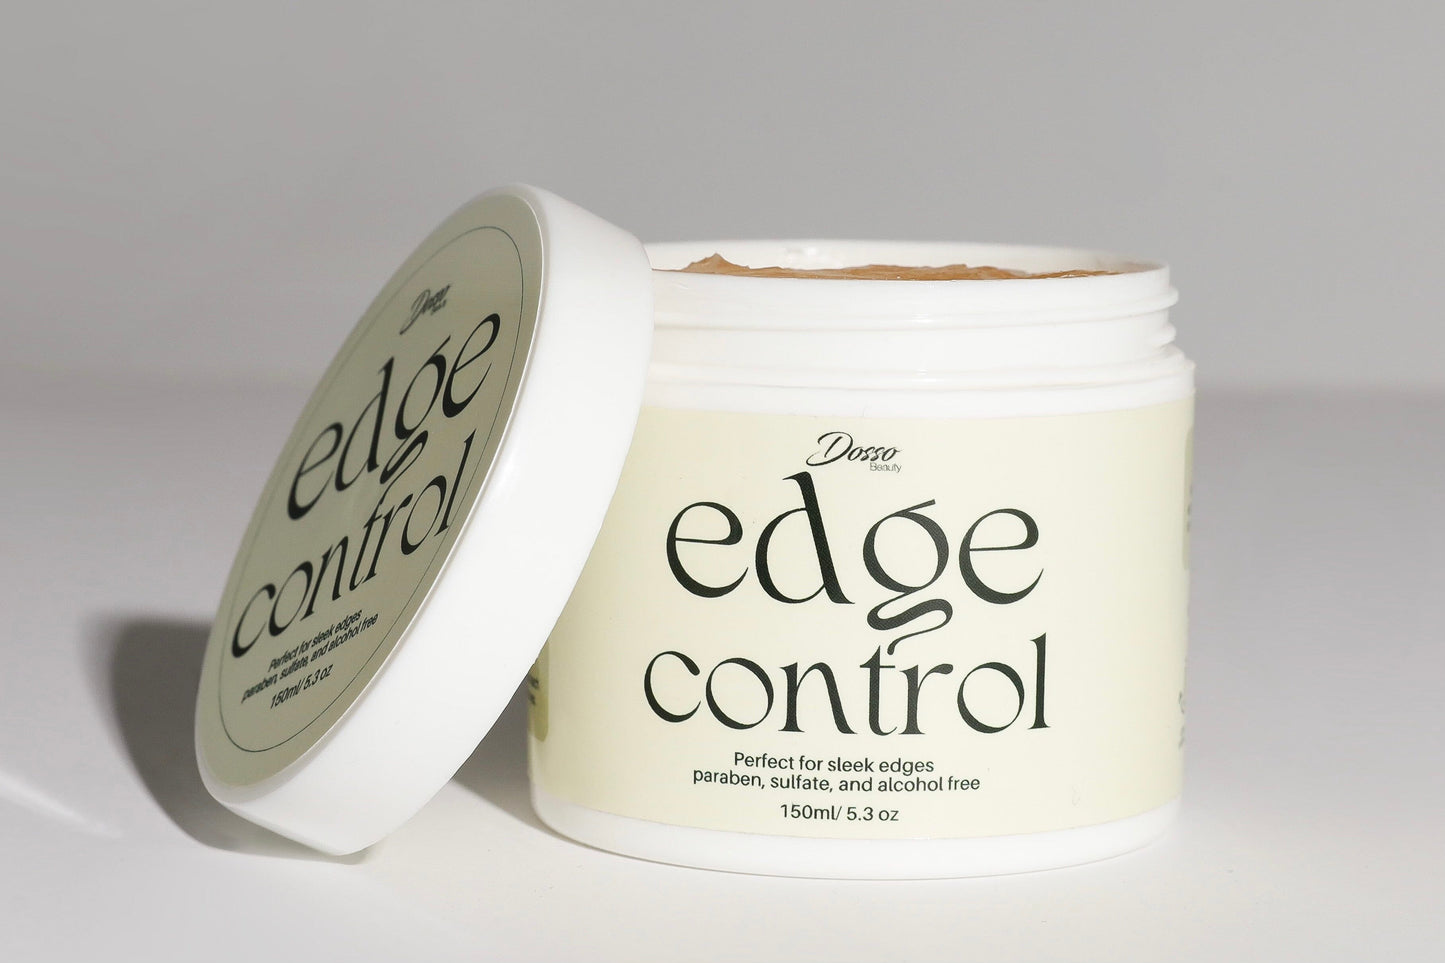 Organic Edge Control